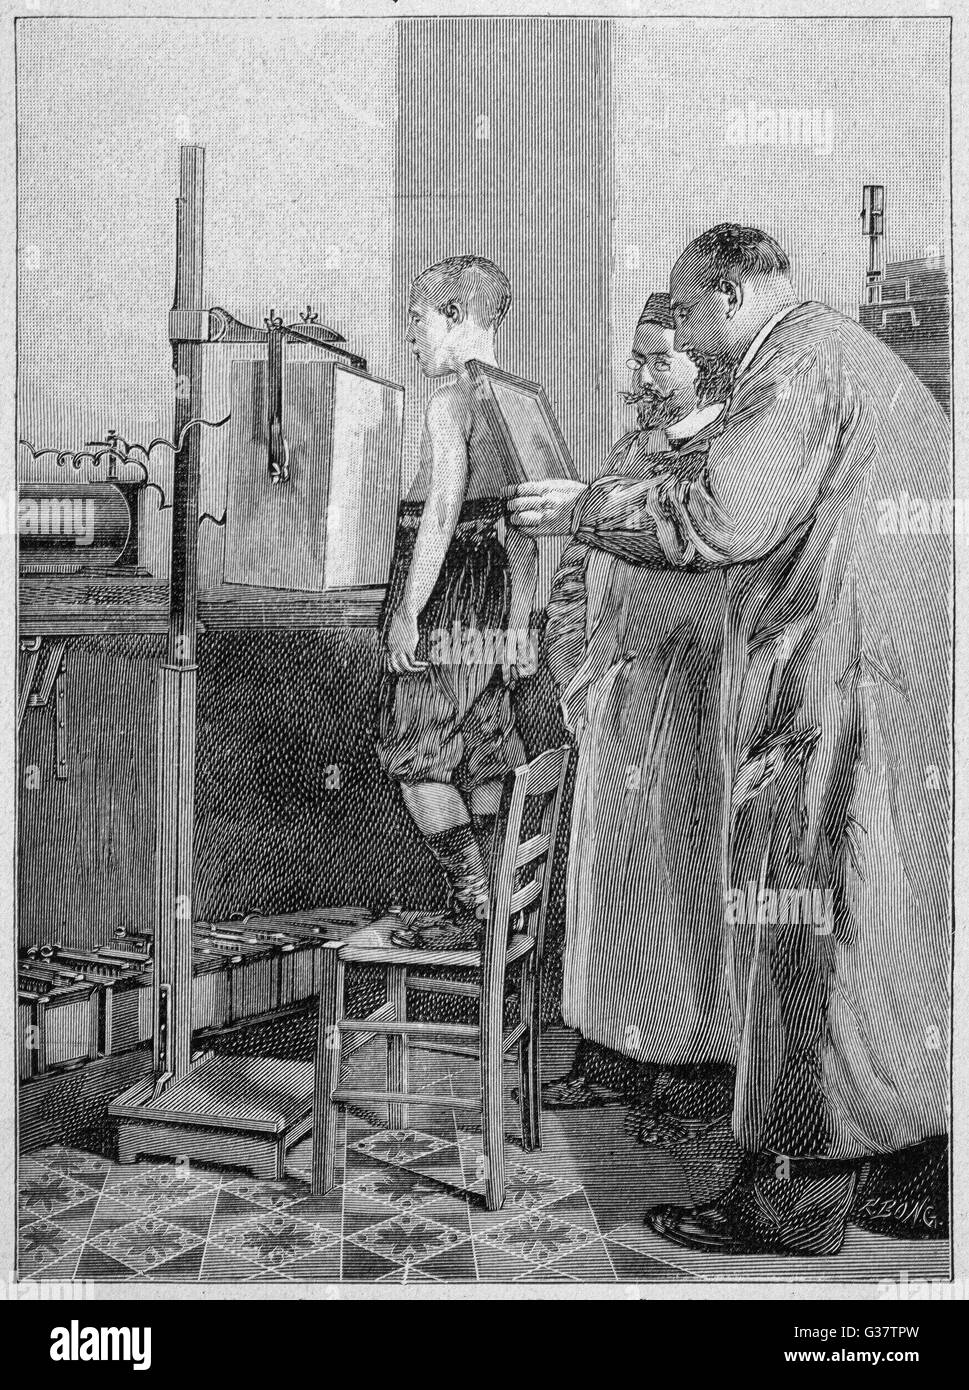 William Konrad Roentgen untersucht einen Patienten.  Er erhielt den Nobelpreis für Physik 1901 für seine Entdeckung im Jahre 1895, bekannt geworden als die x-ray.     Datum: 1896 Stockfoto